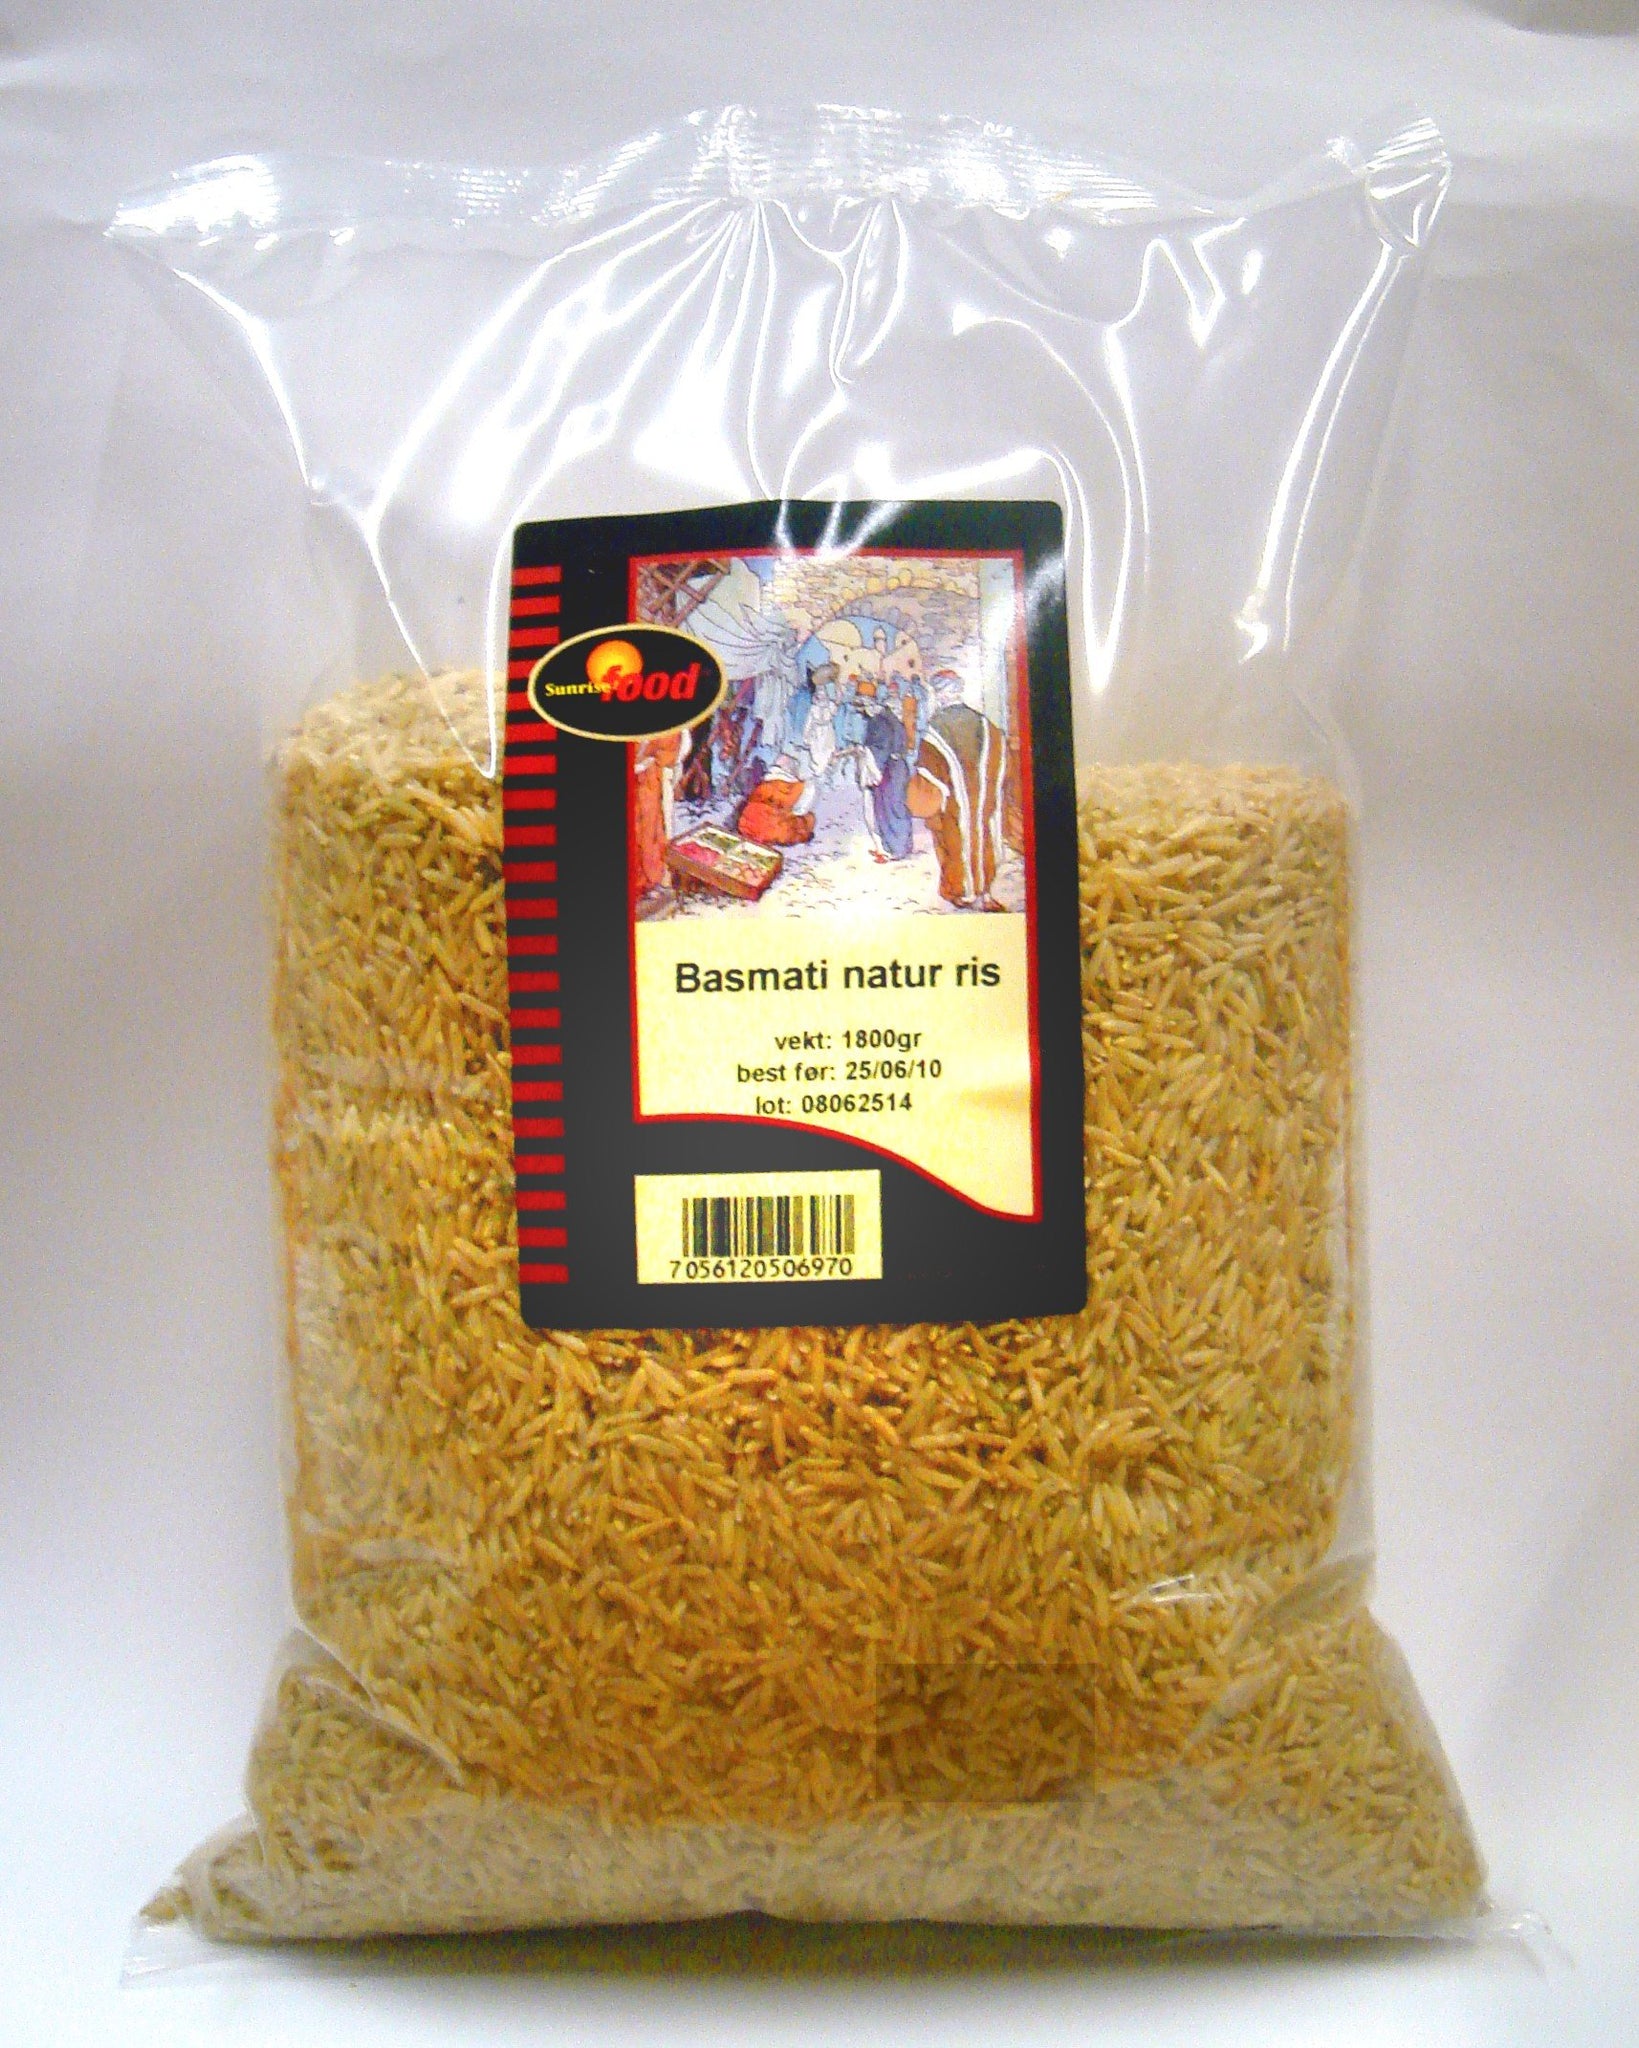 Gresk natur ris - 4x1,7 kg